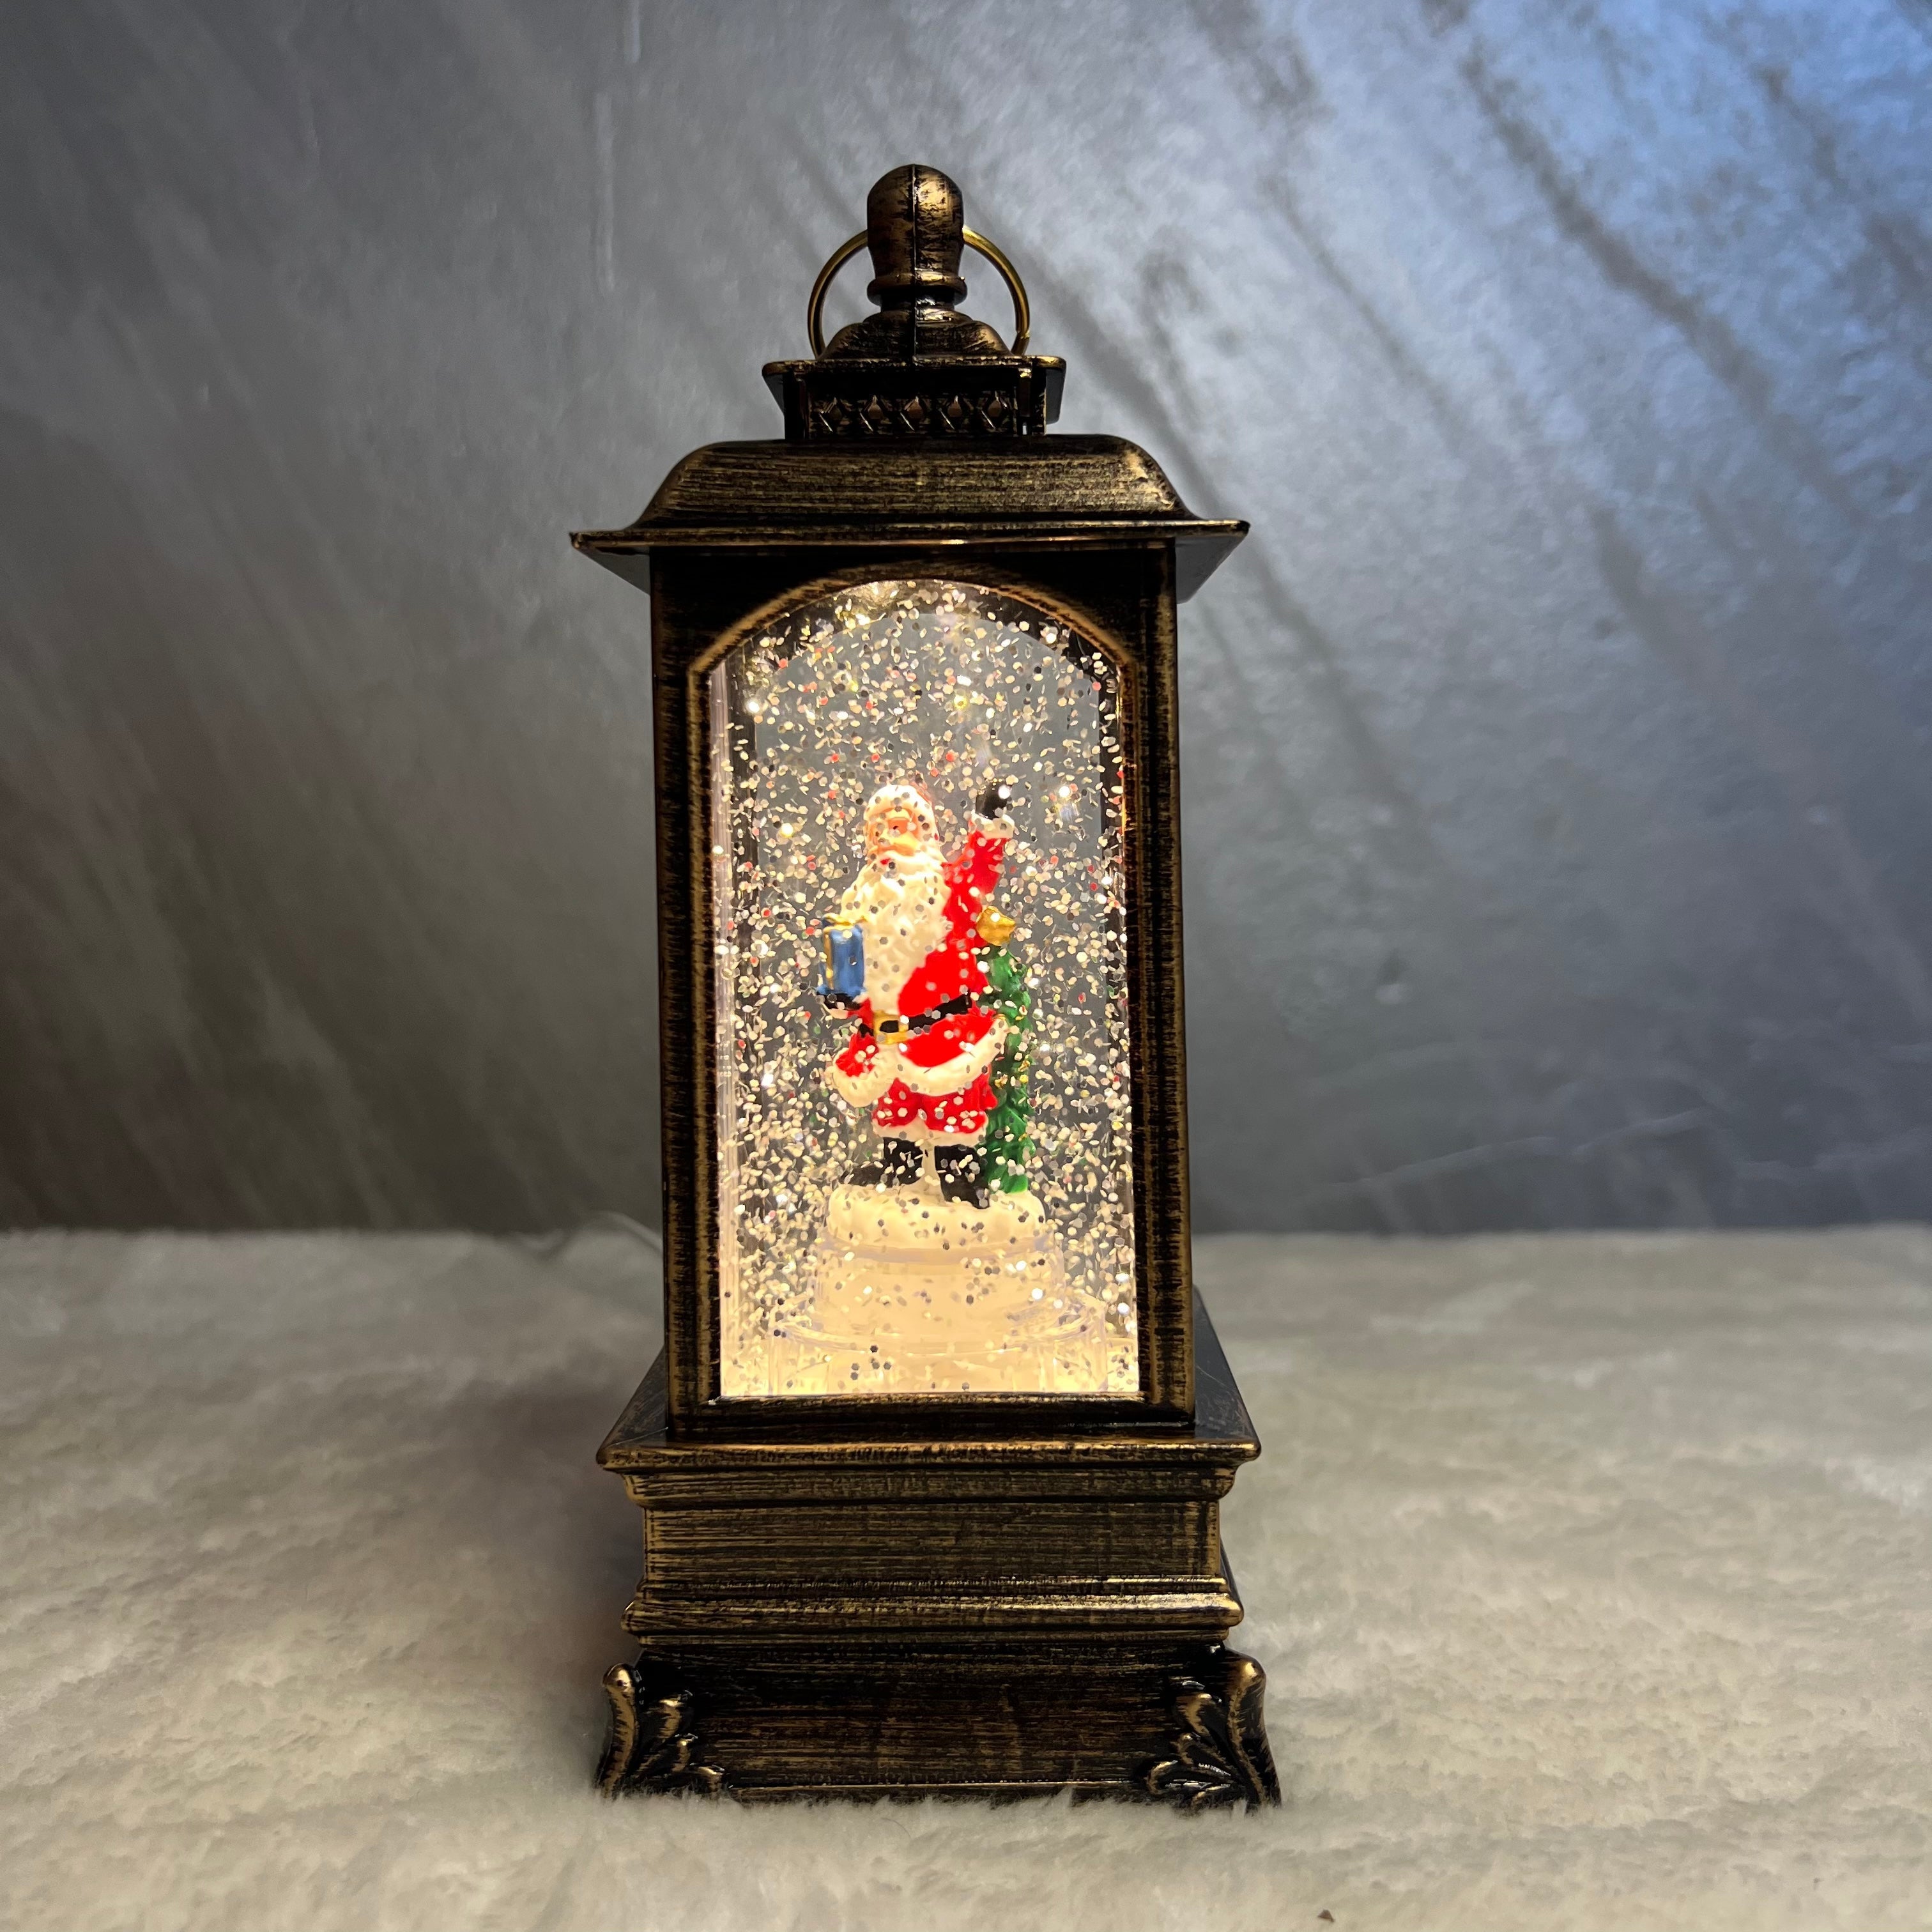 Novogodišnji fenjer Deda Mraz, 20 cm - Novogodišnja dekoracija sa muzikom i LED osvetljenjem